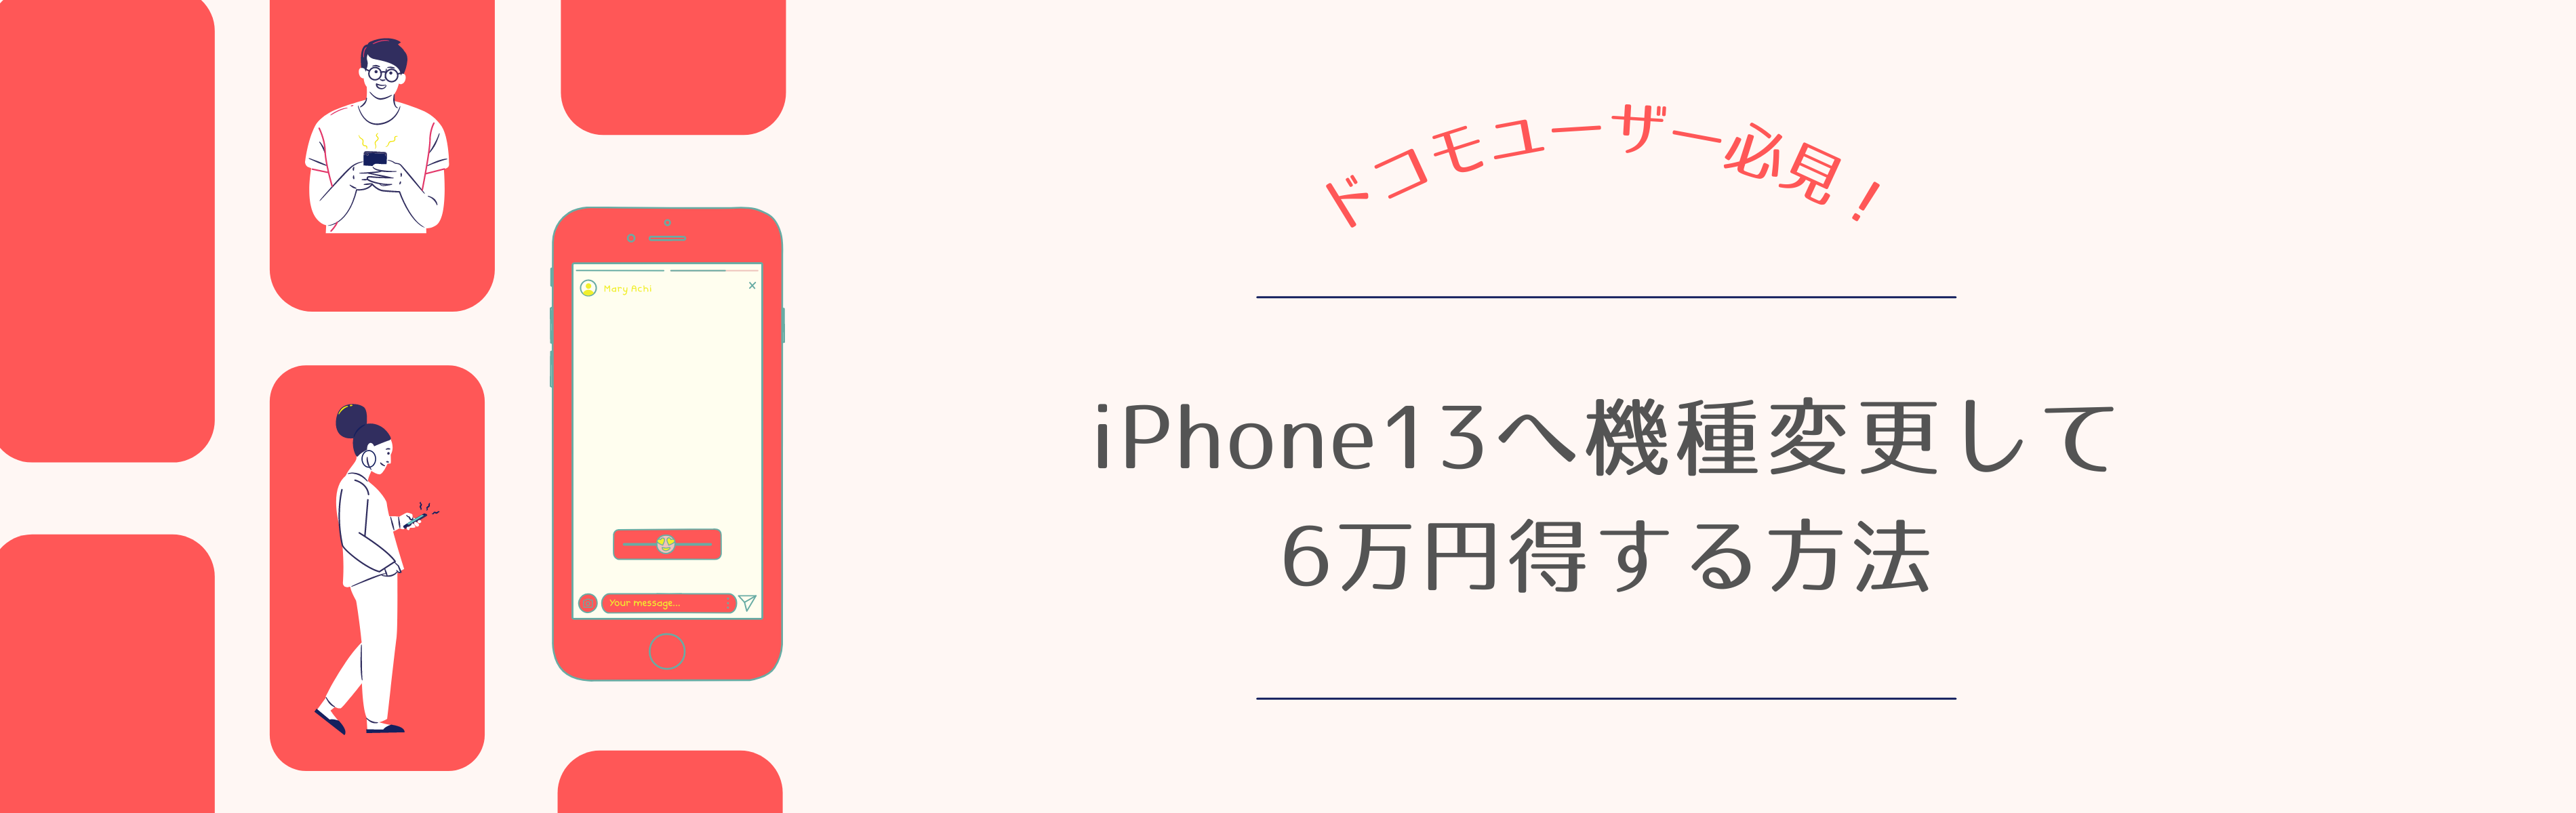 ドコモでiPhone13の機種変更をお得にする方法